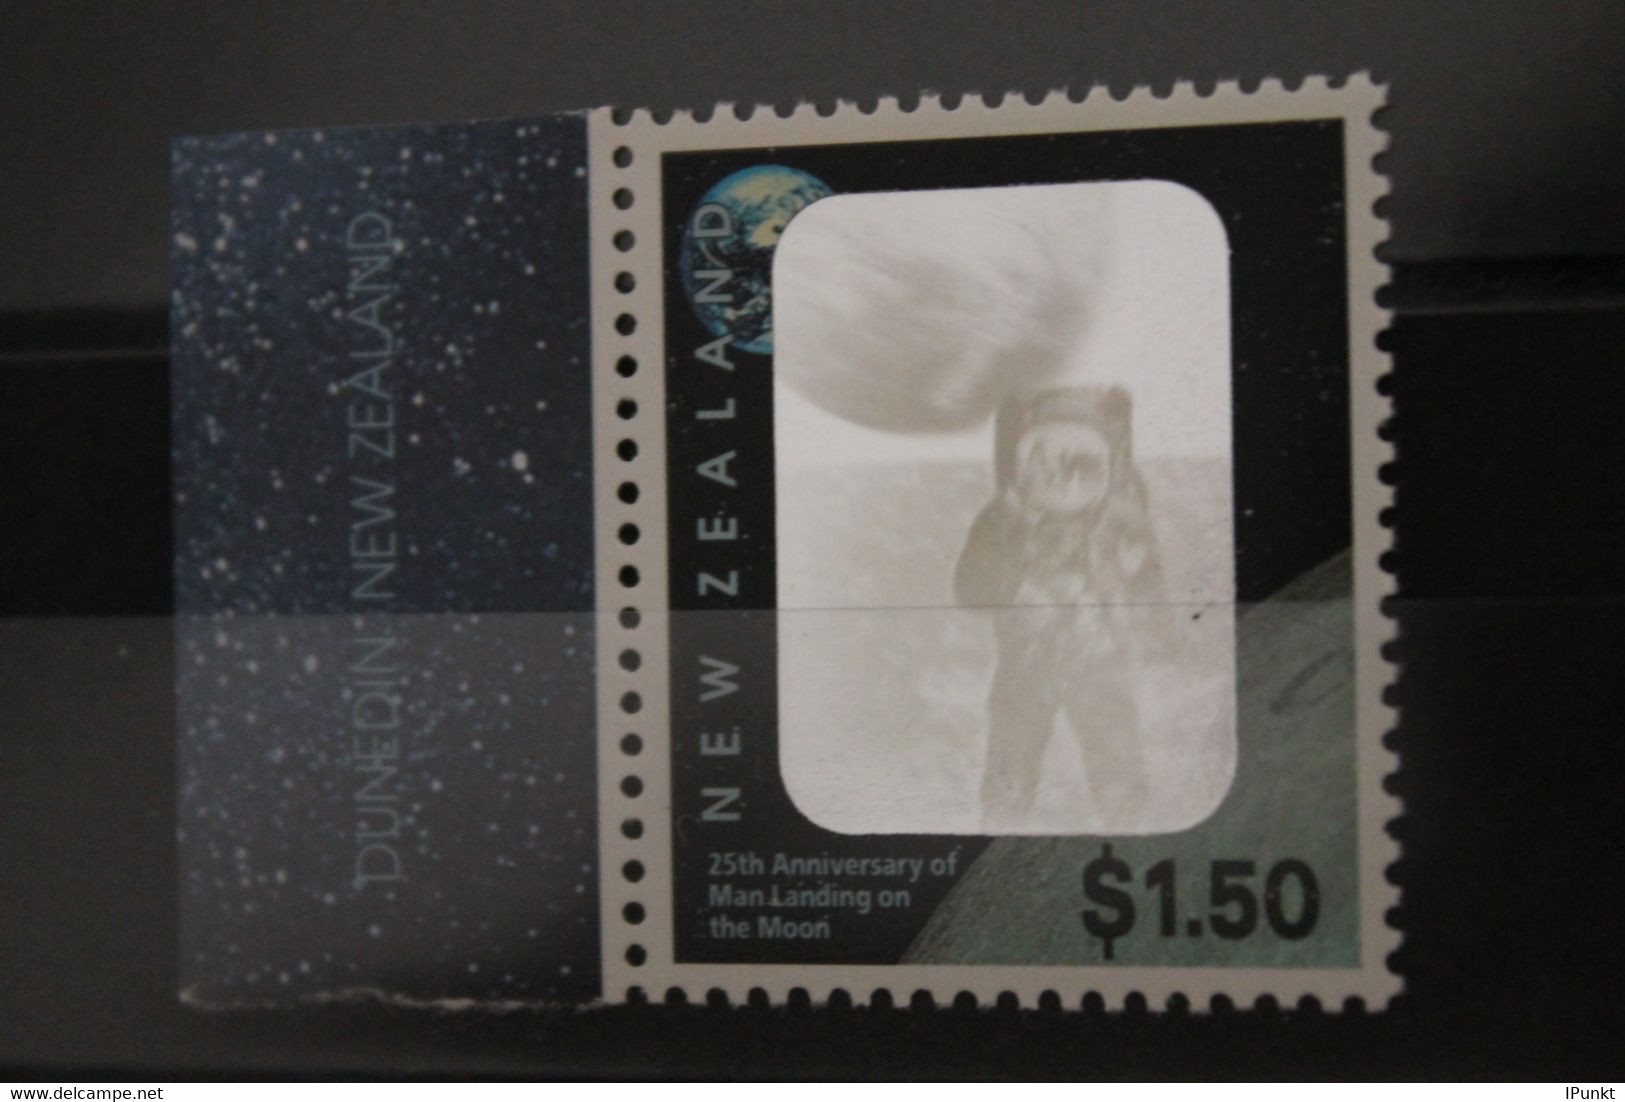 Hologramm Mondlandung; New Zealand 1994; MNH - Hologrammes